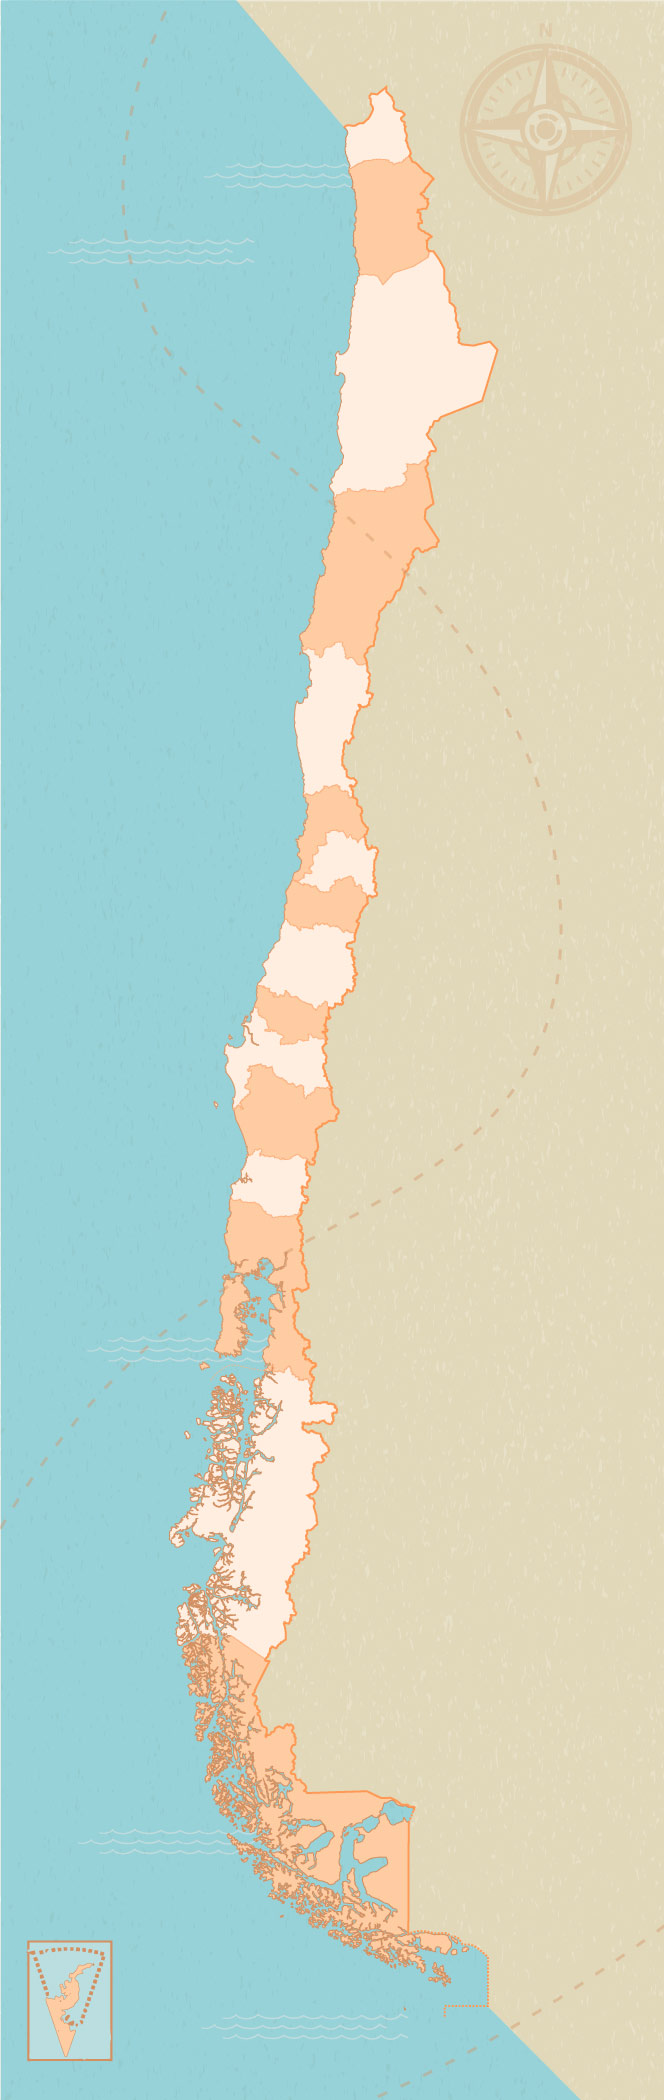 Mapa Regiones de Chile